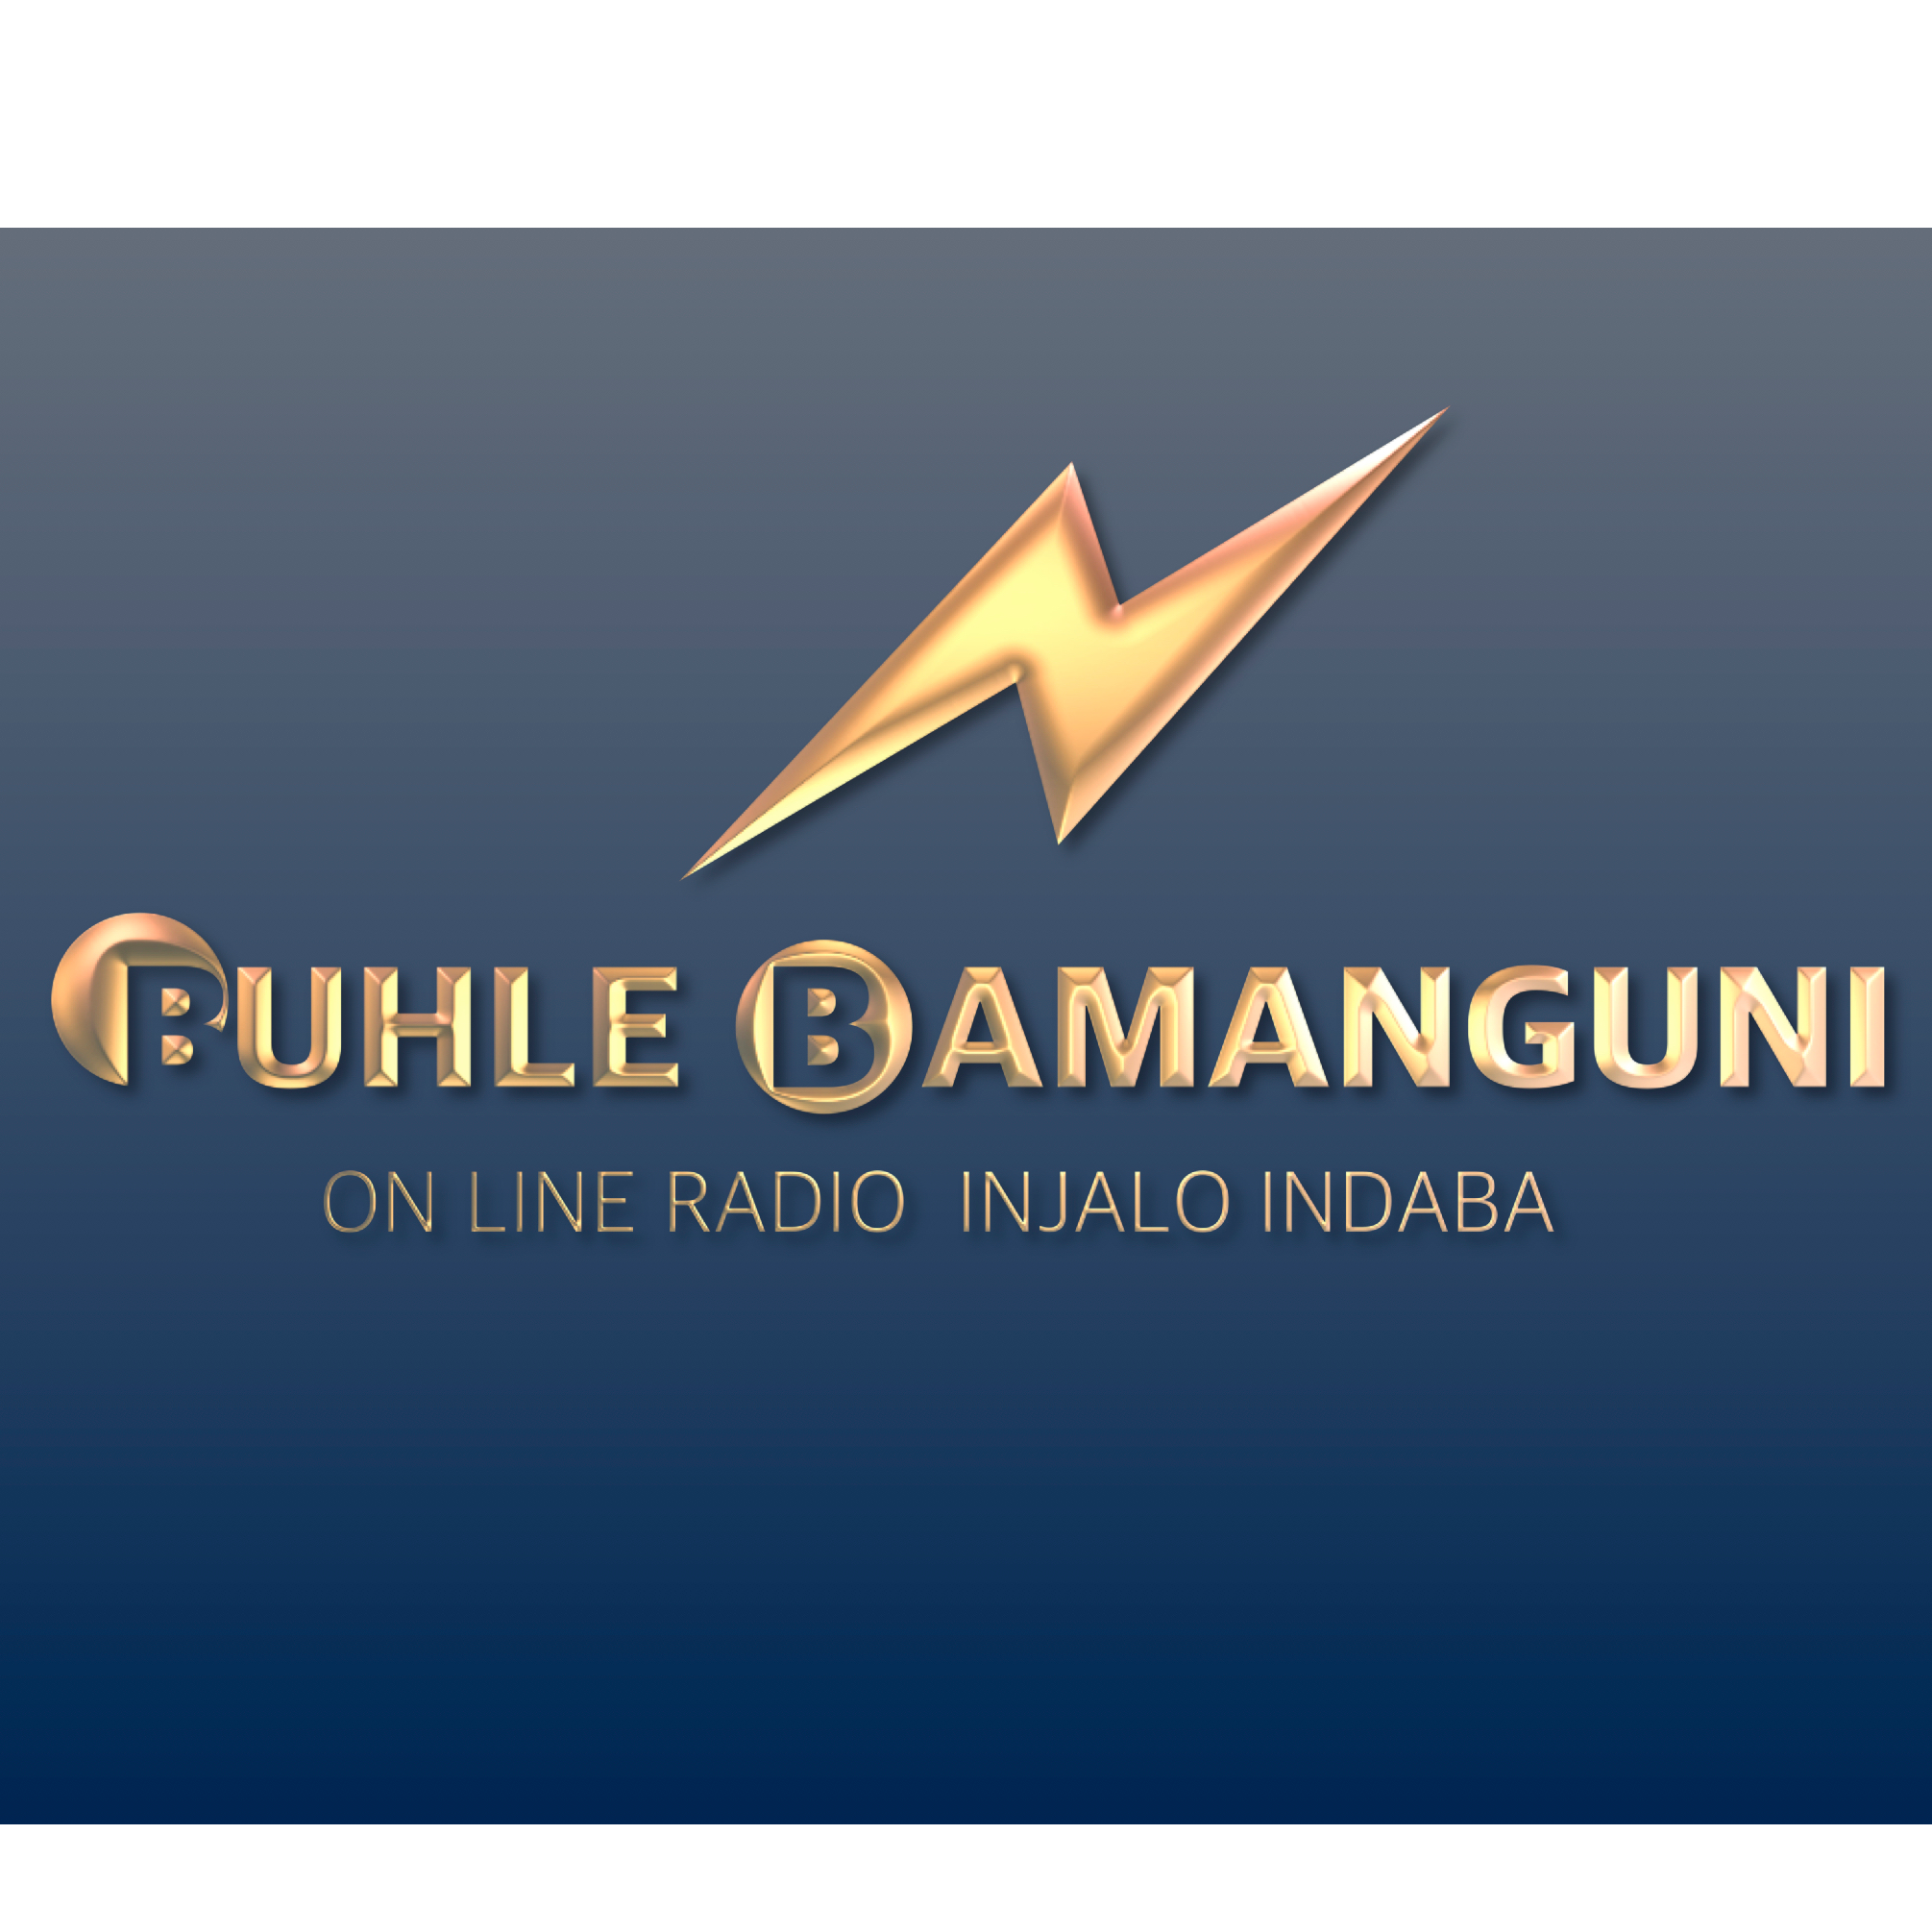 Buhle Bamanguni Online Radio